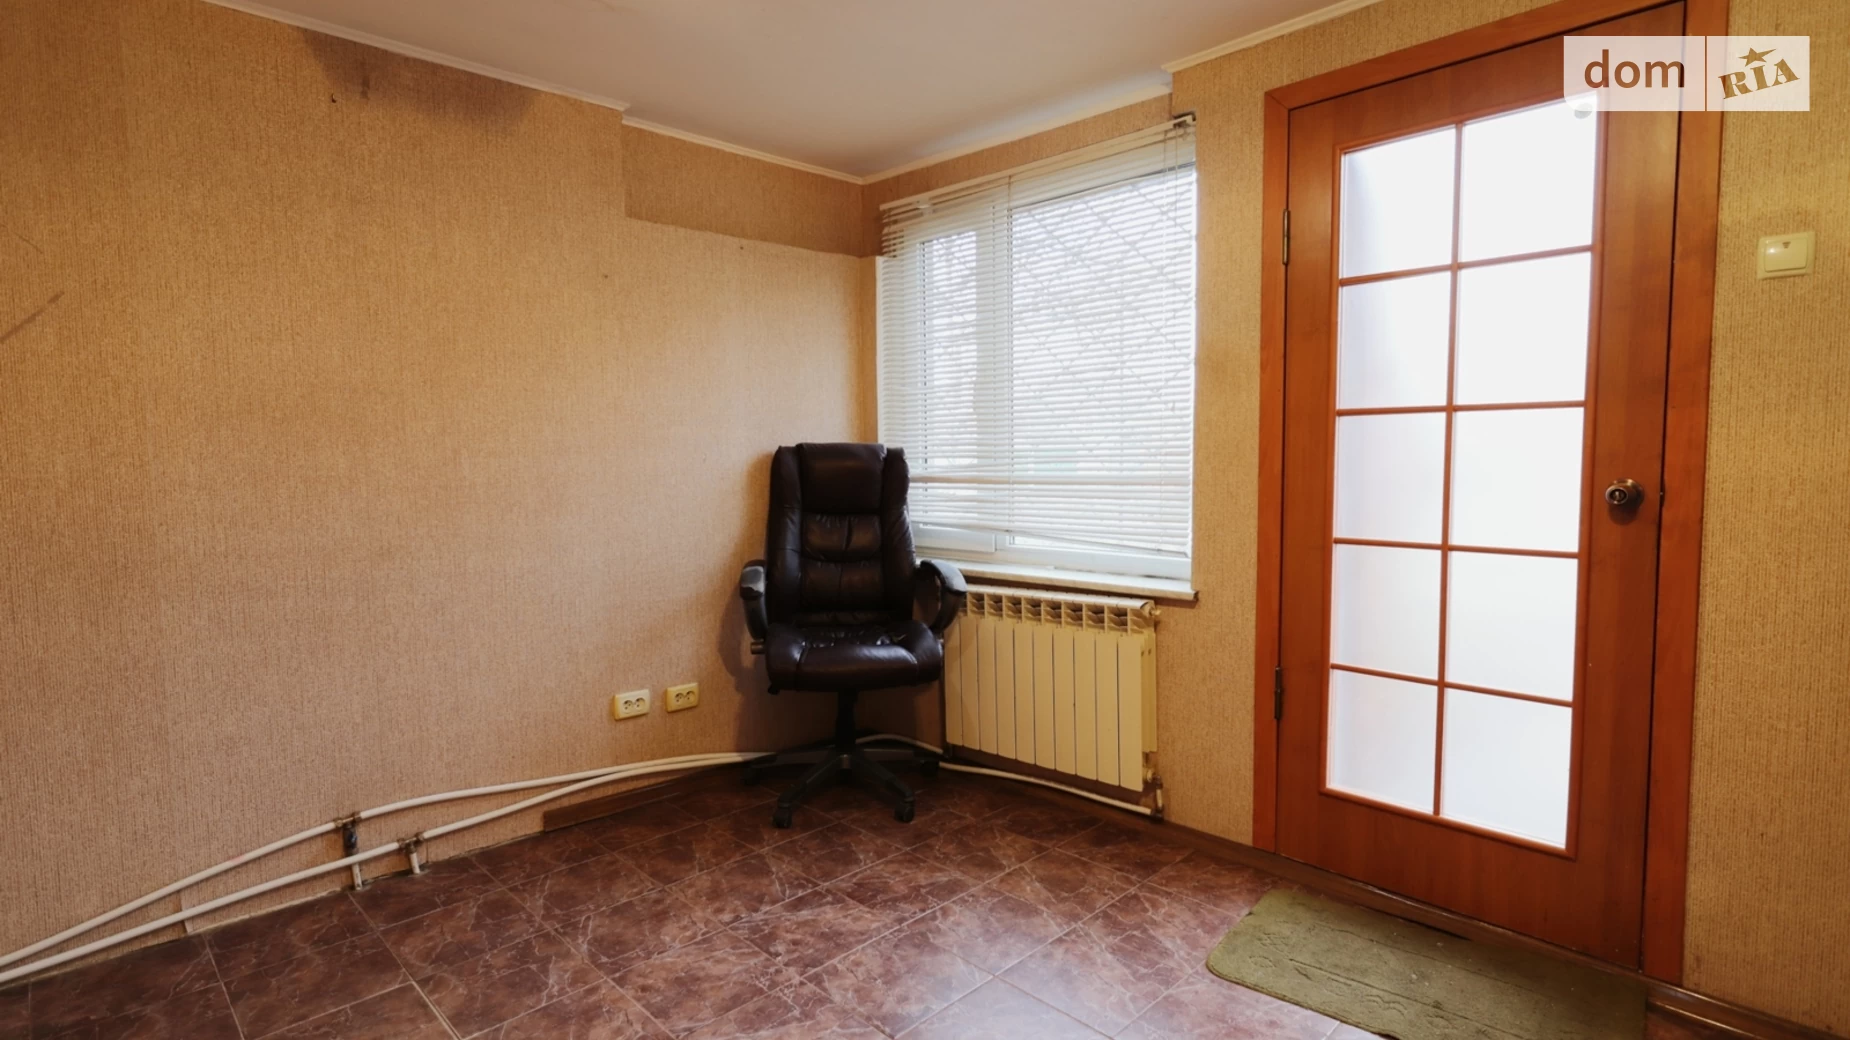 Продається 2-кімнатна квартира 64.5 кв. м у Миколаєві, ул. Фалєєвська, 42